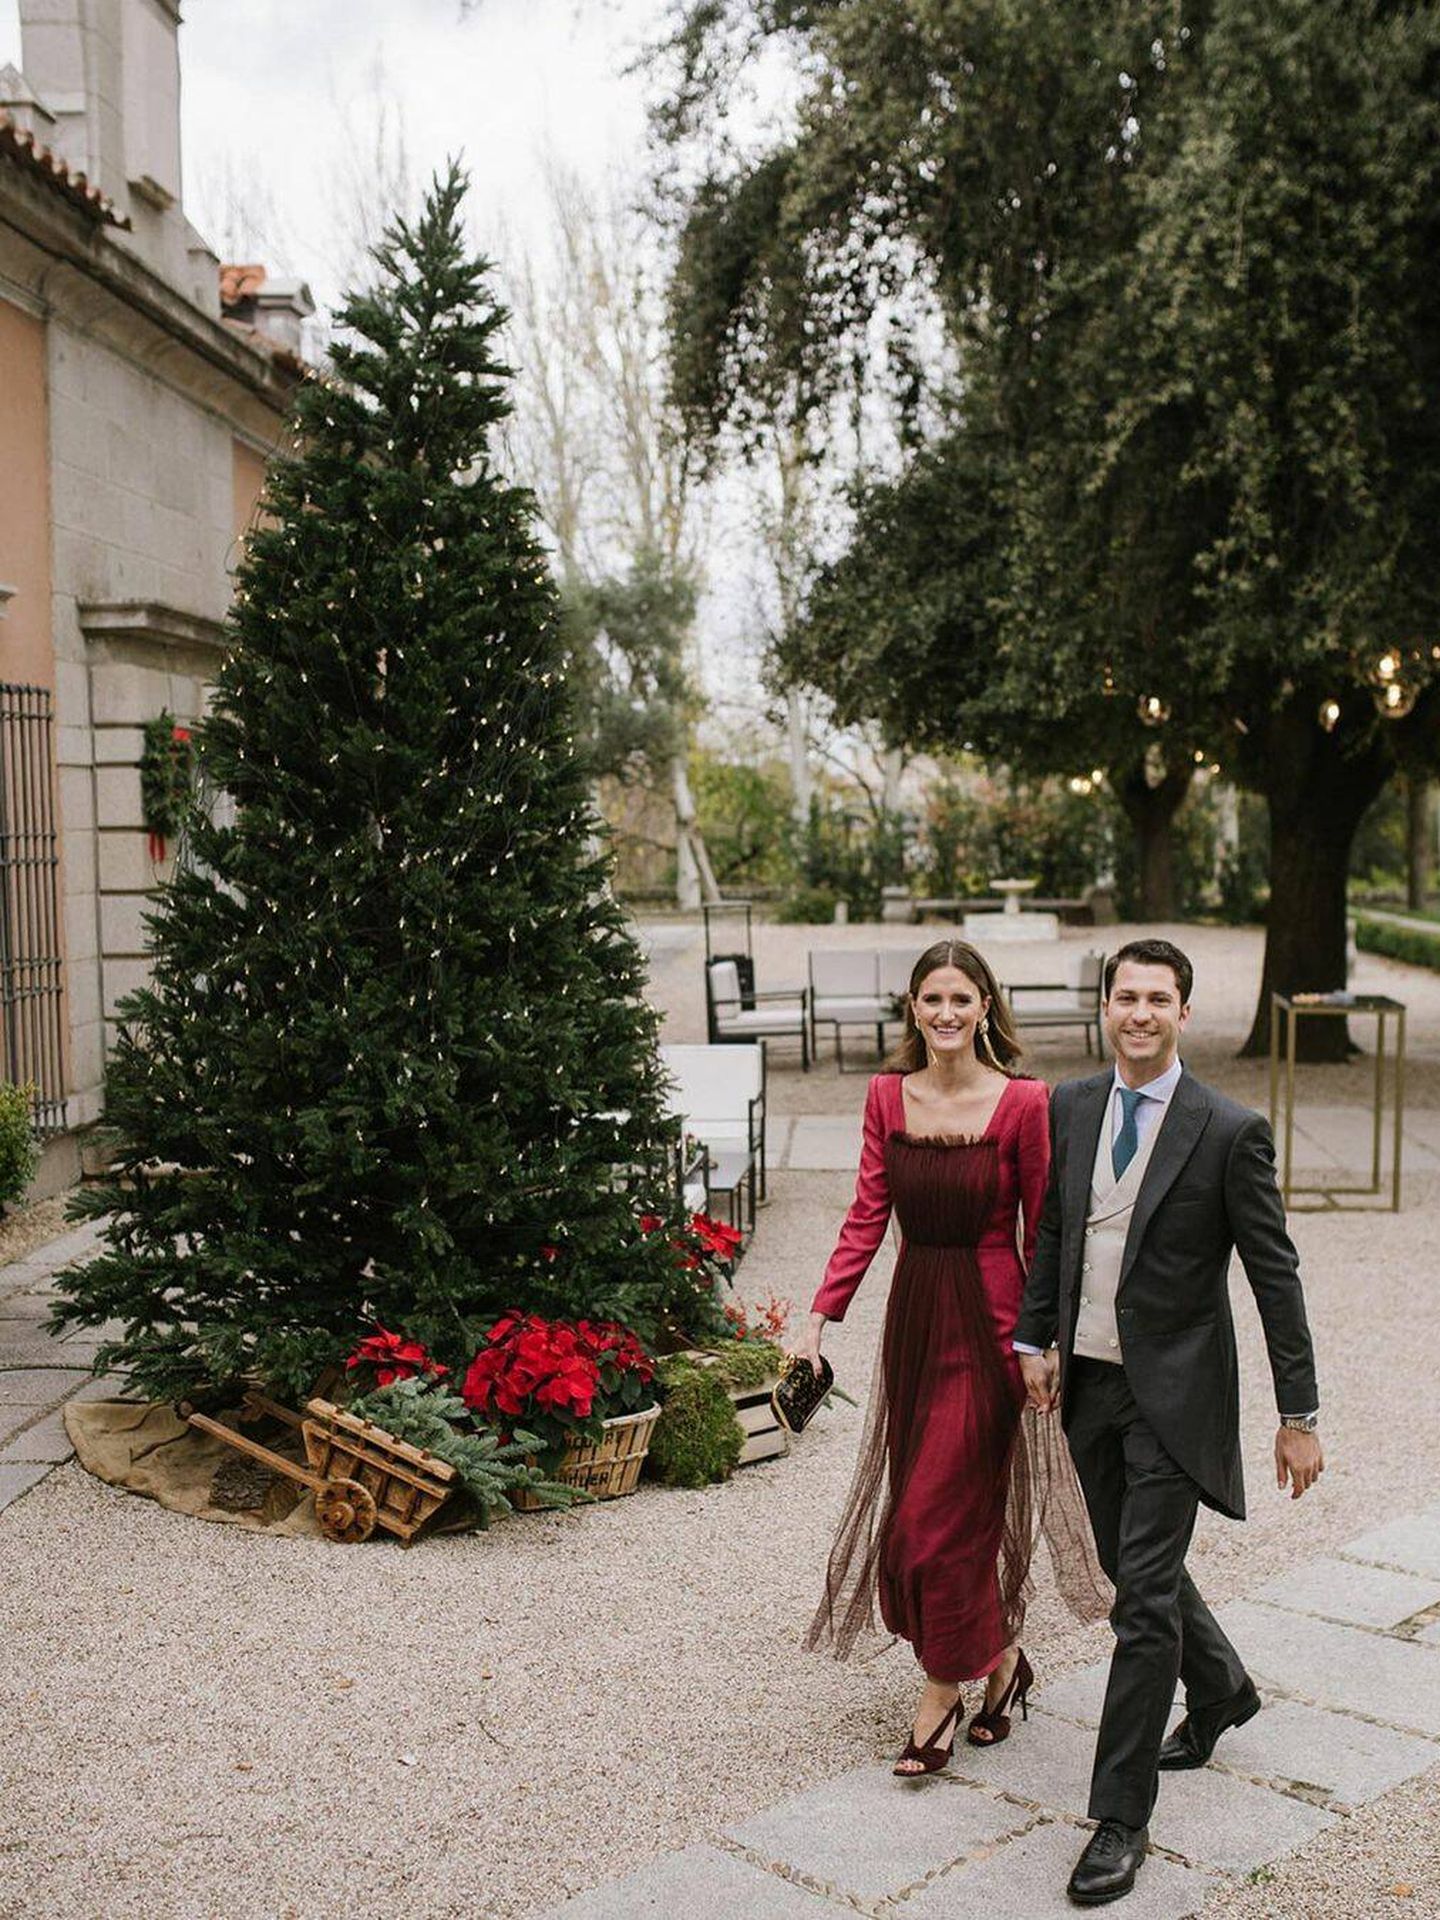 La boda en Navidad de Marta Pradas. (Instagram/@pelillosderaton_wedding)